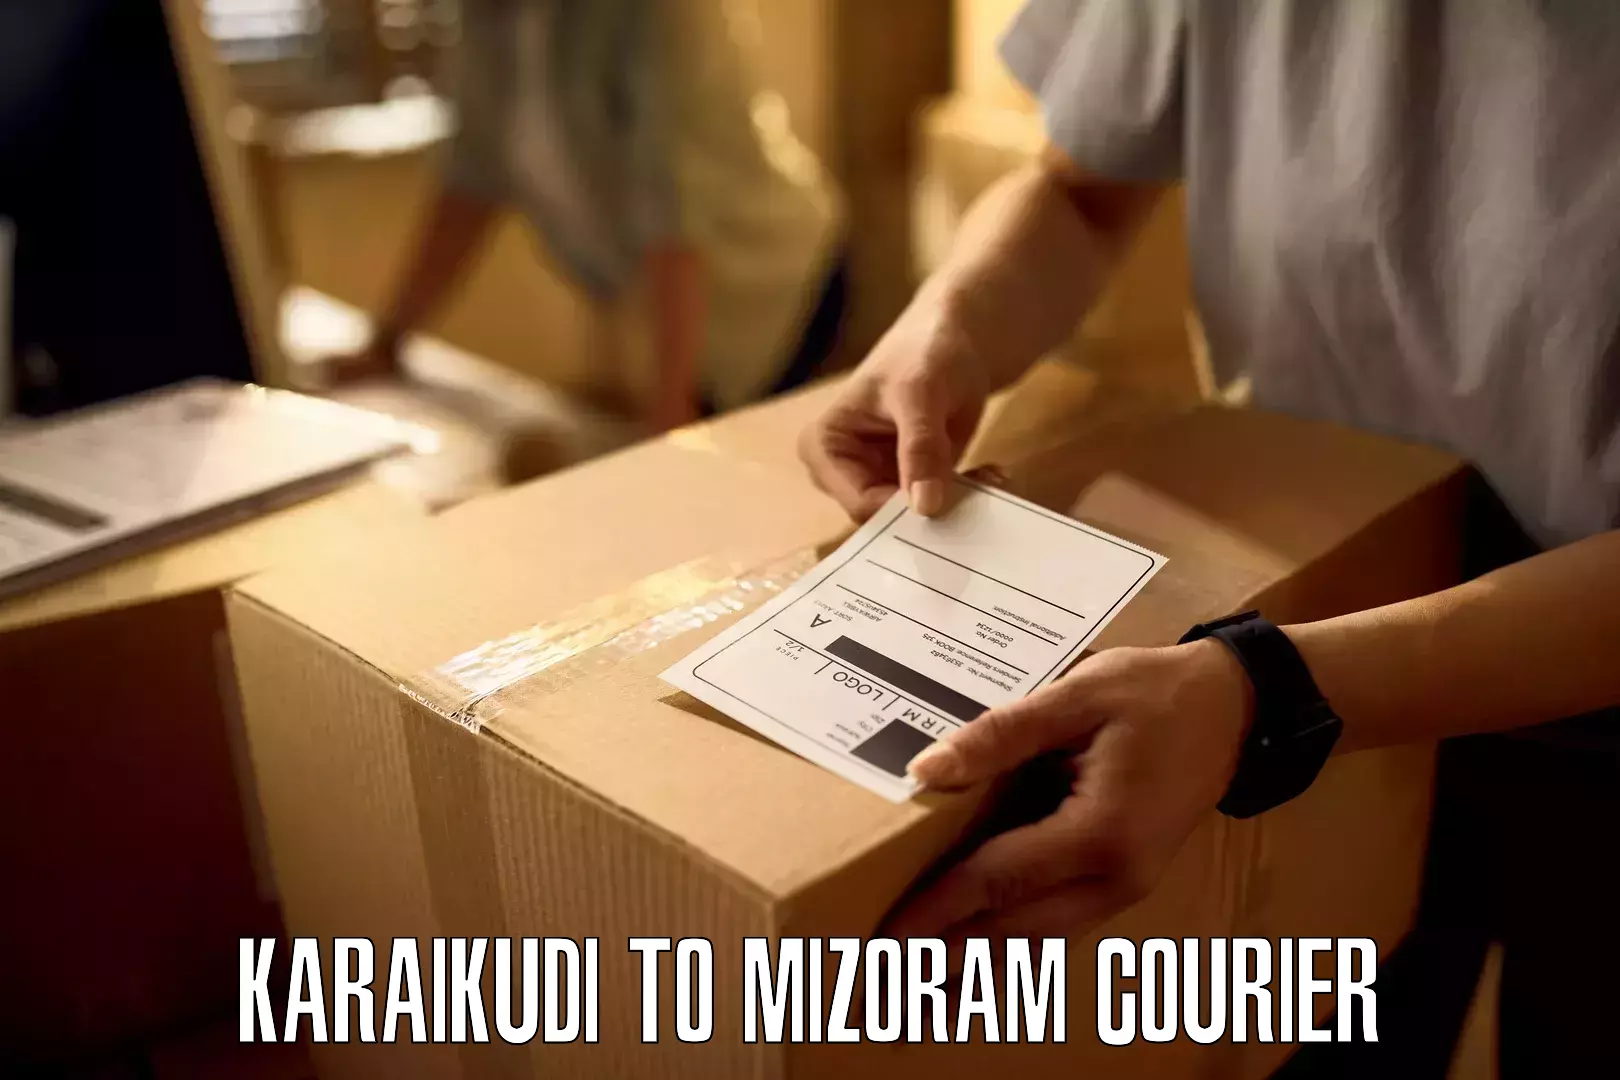 Expedited shipping methods Karaikudi to Siaha